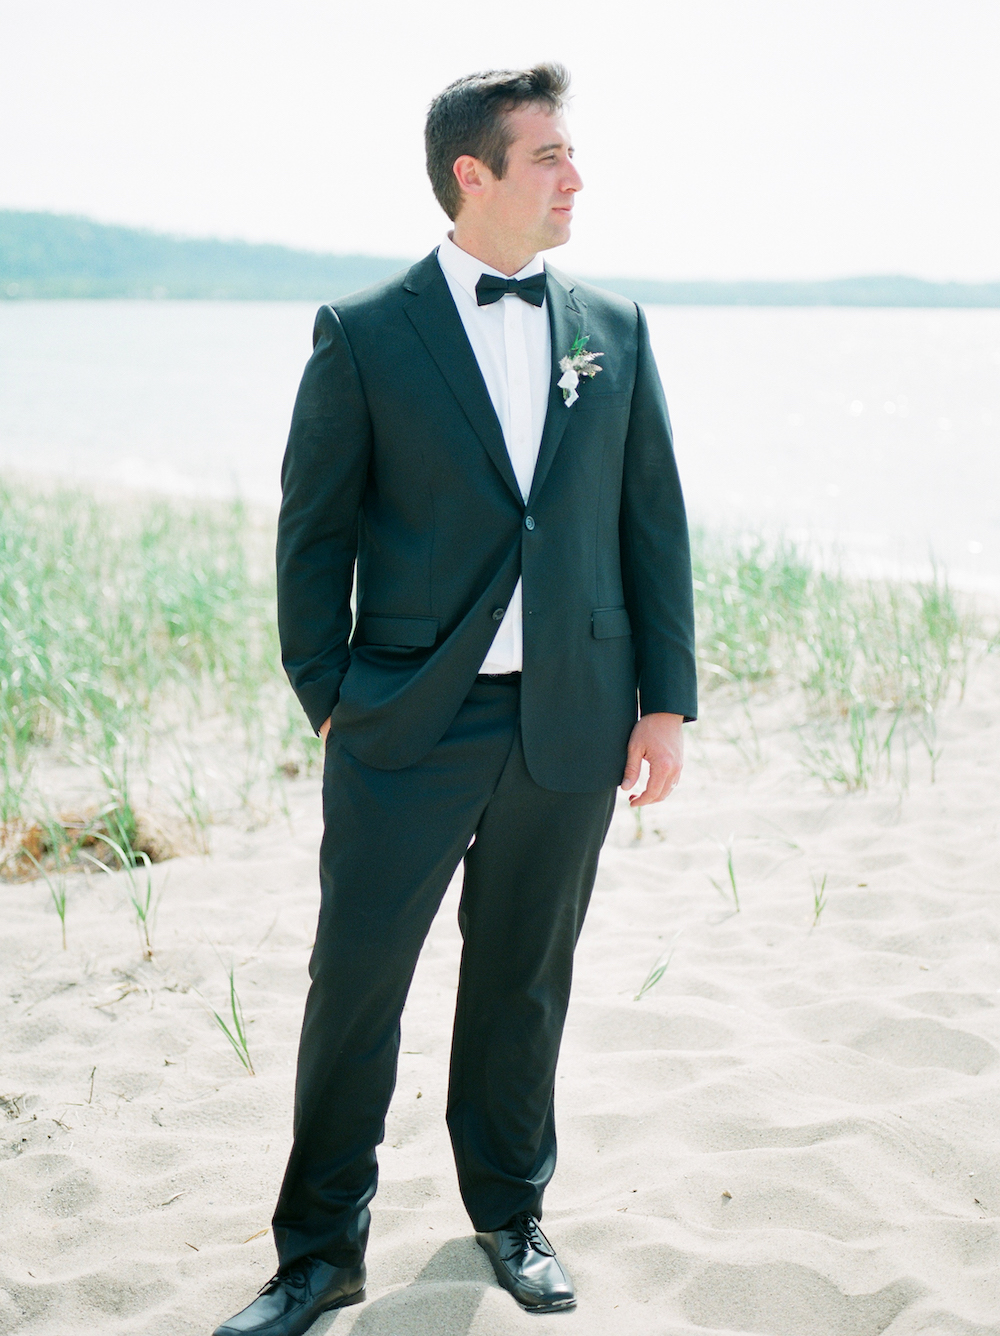 A groom on the beach